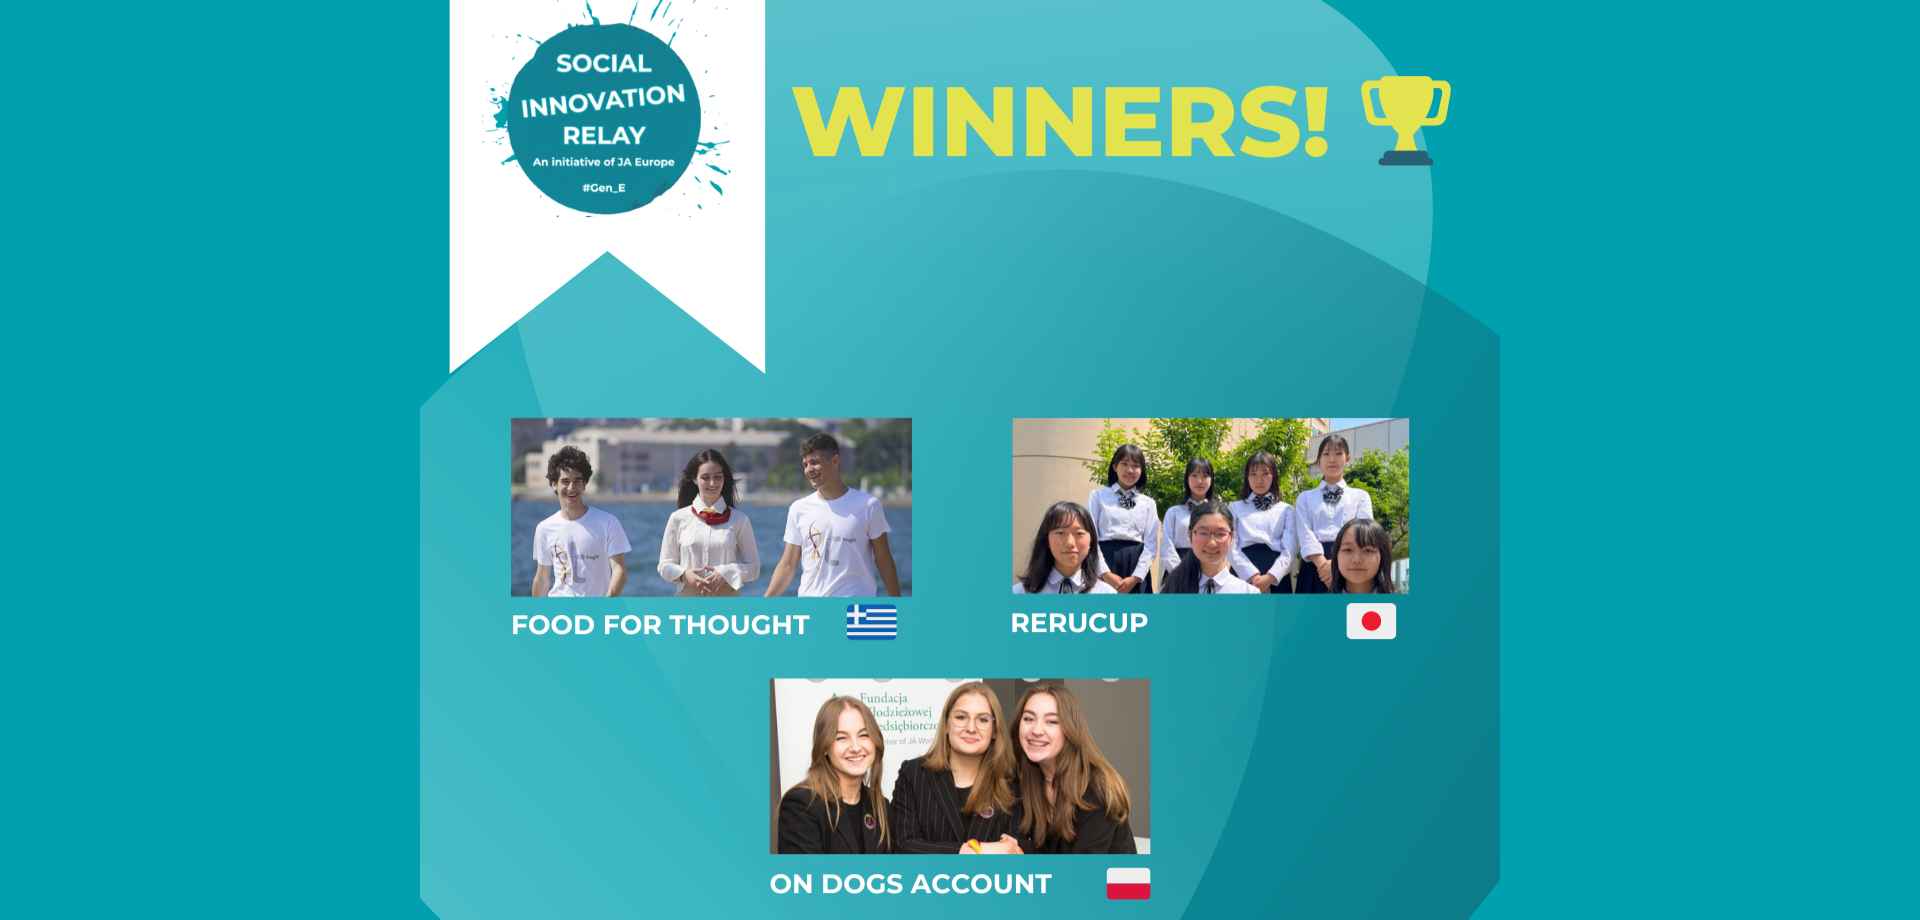 Πρώτη θέση για την ελληνική μαθητική ομάδα στον 8ο Διεθνή Διαγωνισμό Κοινωνικής Καινοτομίας του JA